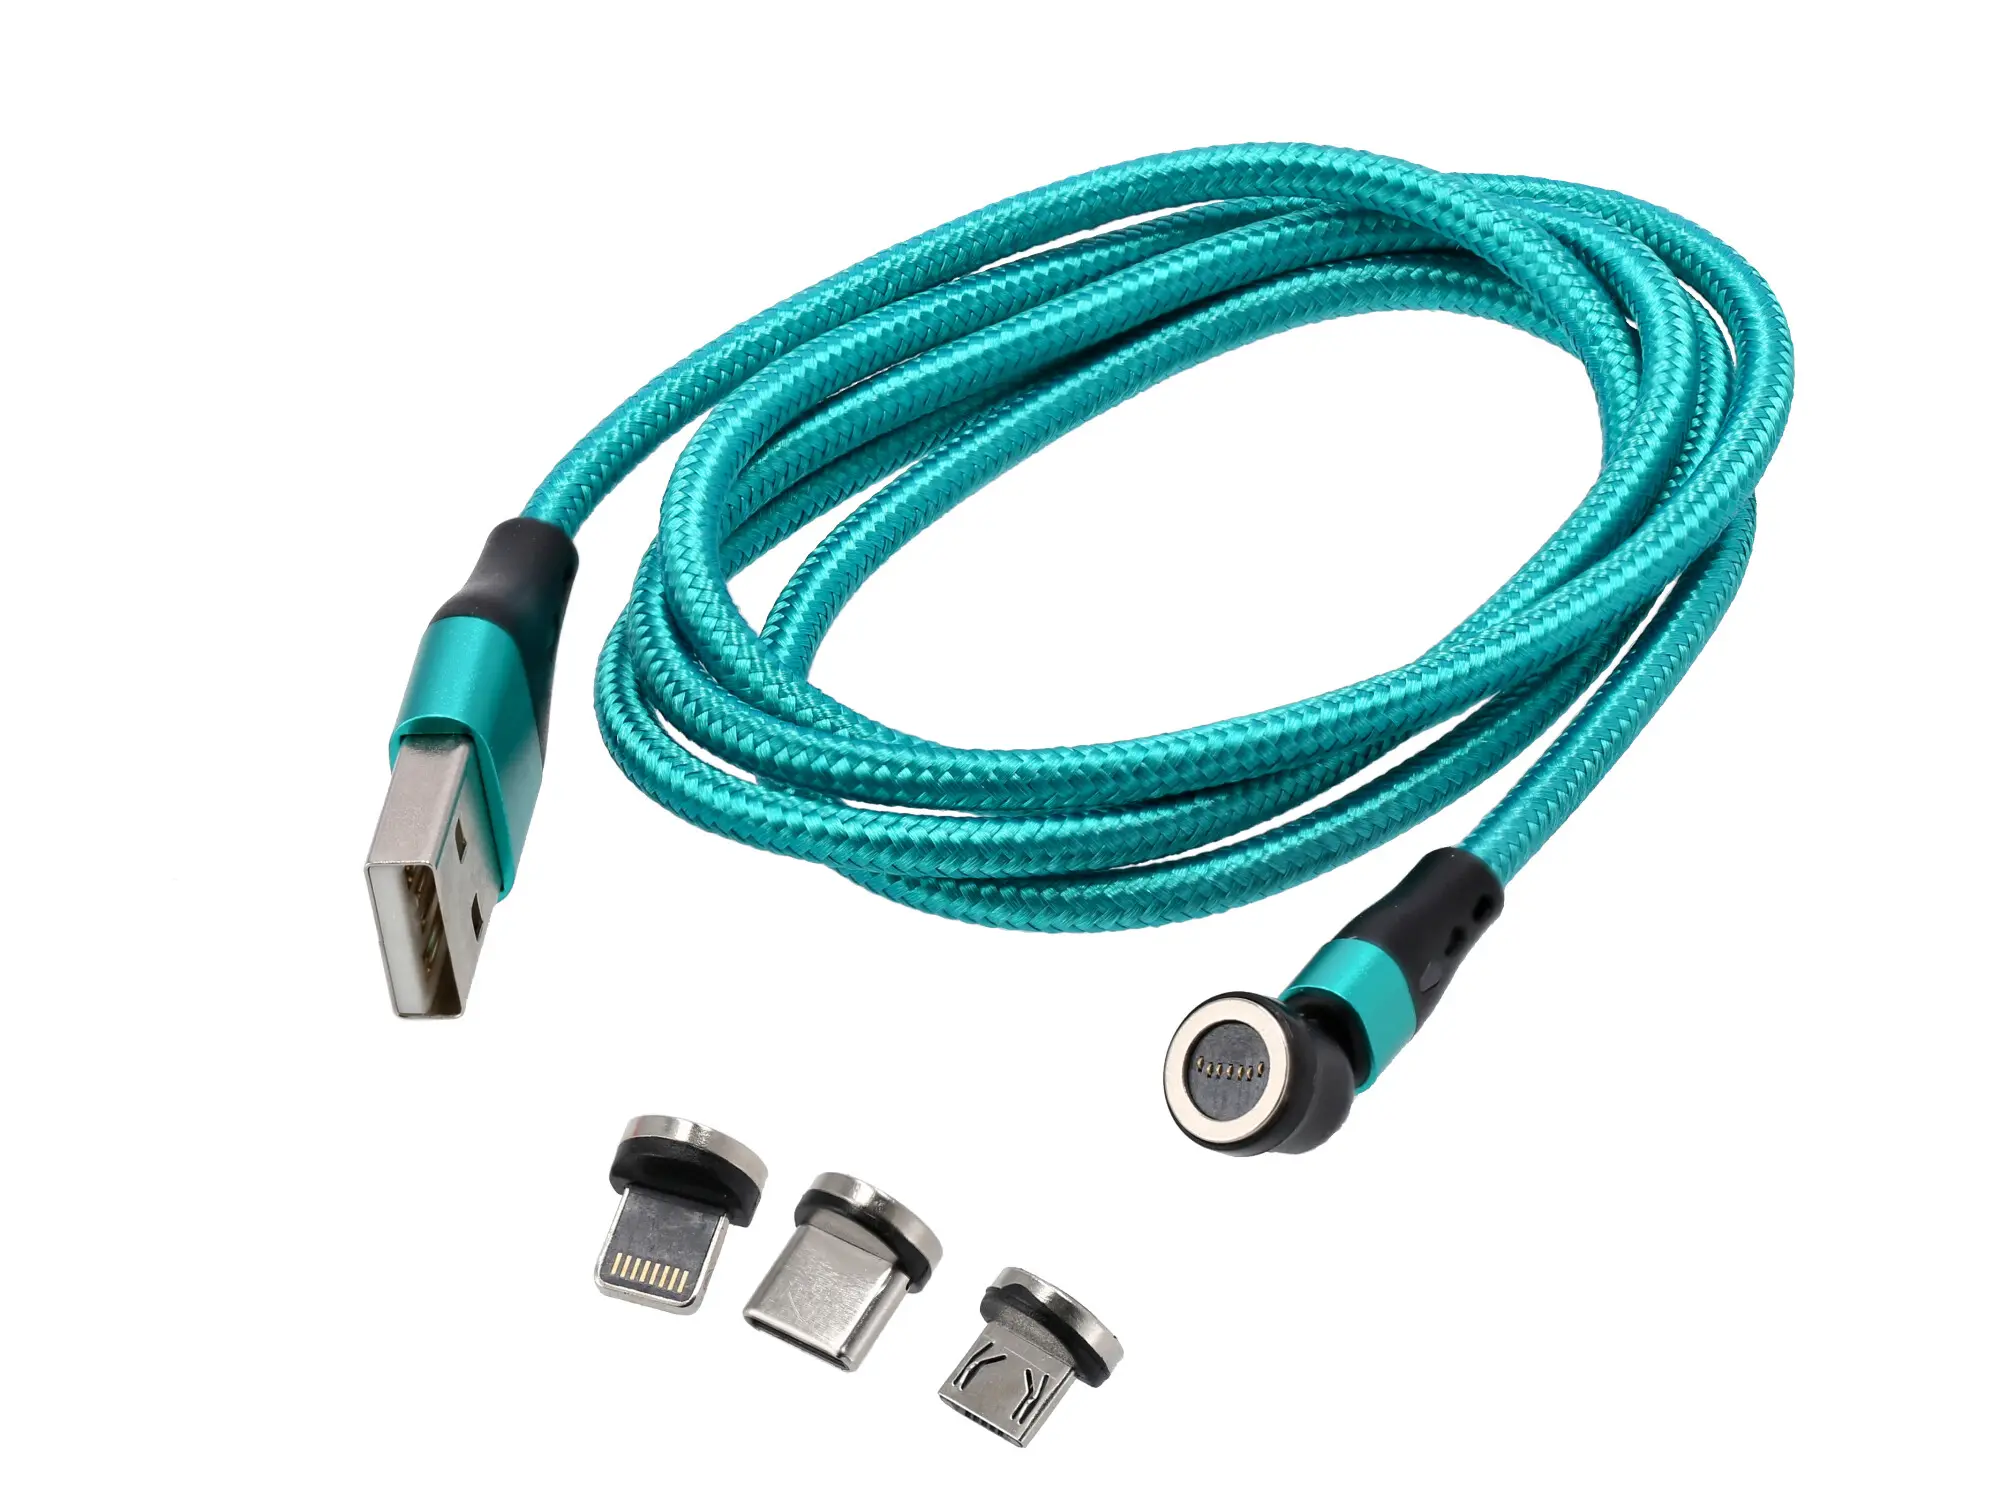 Magnetisches USB-Ladekabel 3 in 1 Farbe grün, Art.-Nr.: 10076808 - Bild 1